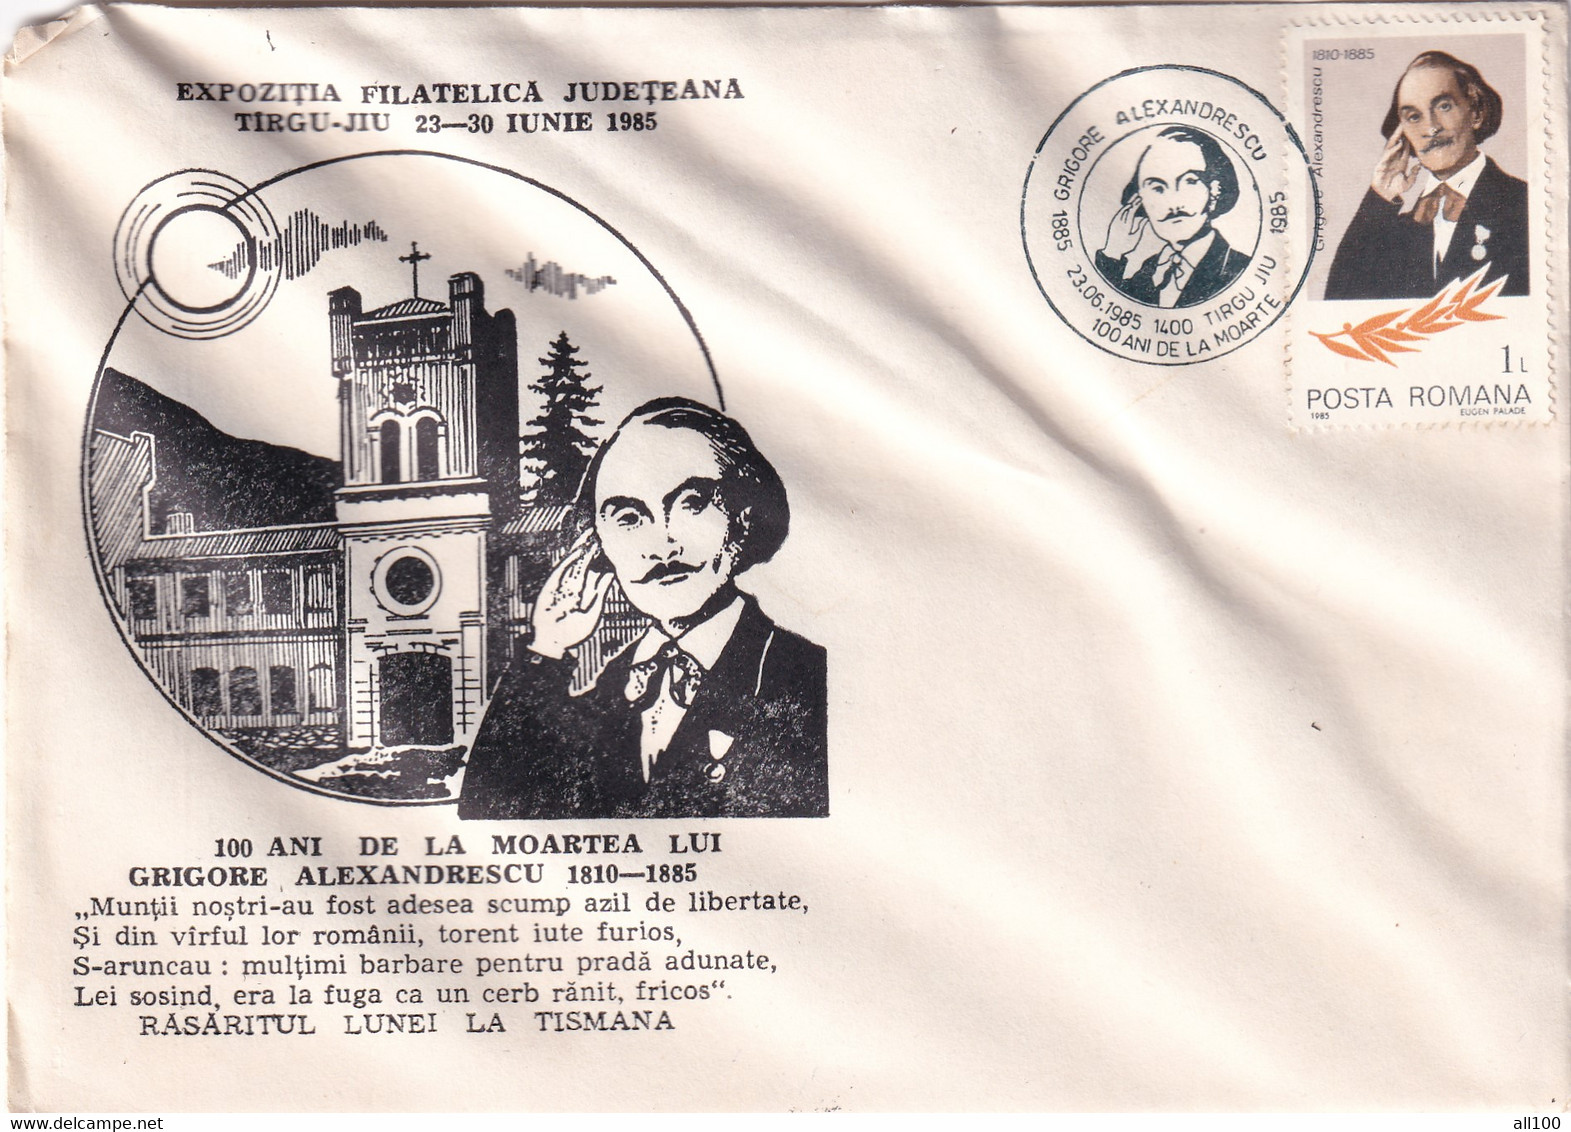 A21940 - Expozitia Filatelica Judeteana Targu Jiu Grigore Alexandrescu Cover Envelope Used 1985 RSR Stamp Aniversare - Briefe U. Dokumente